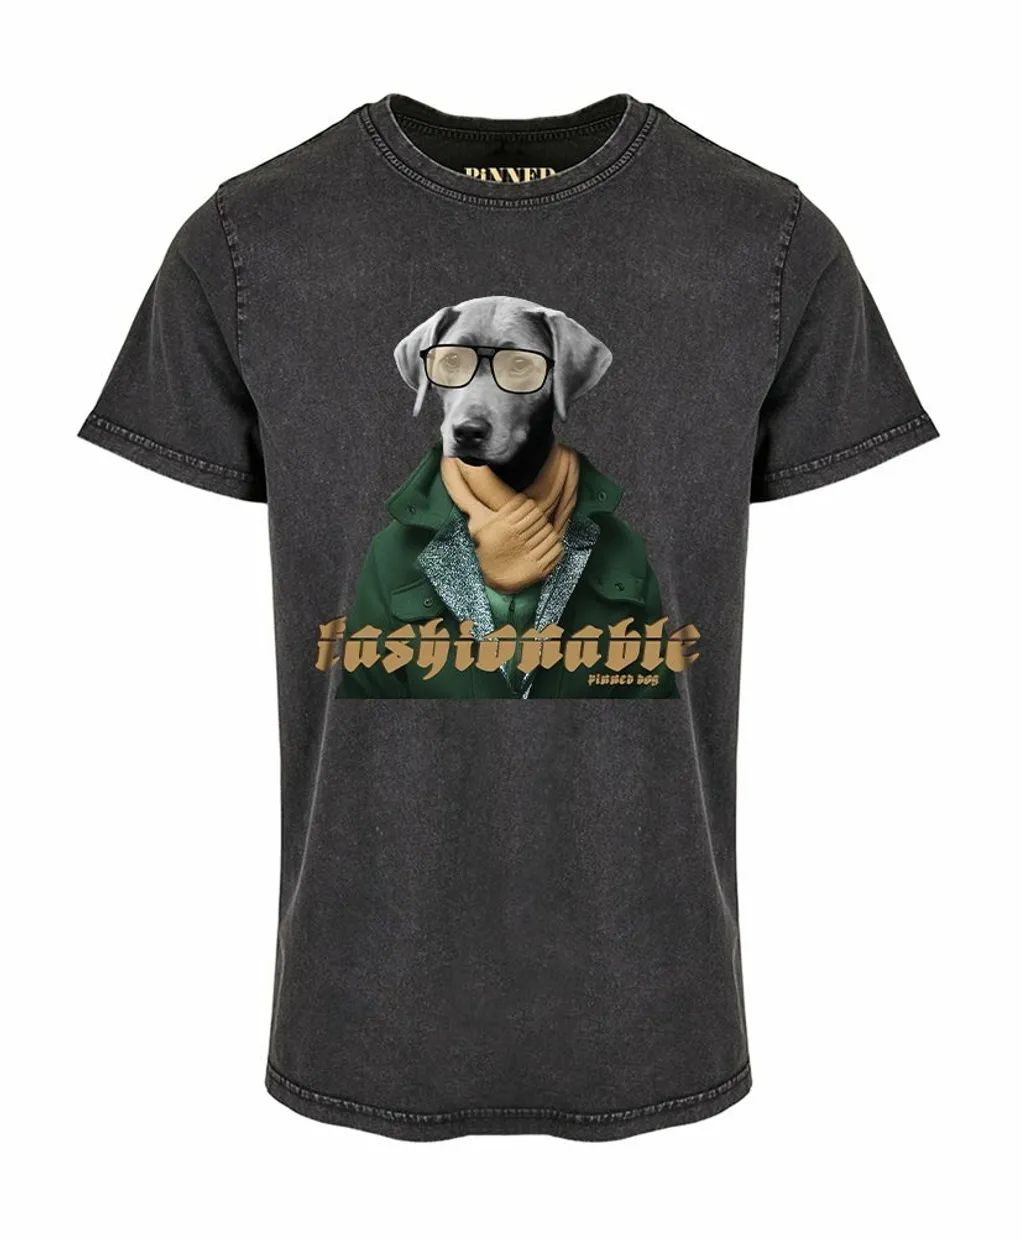 T-shirt Pinned dog washed grey